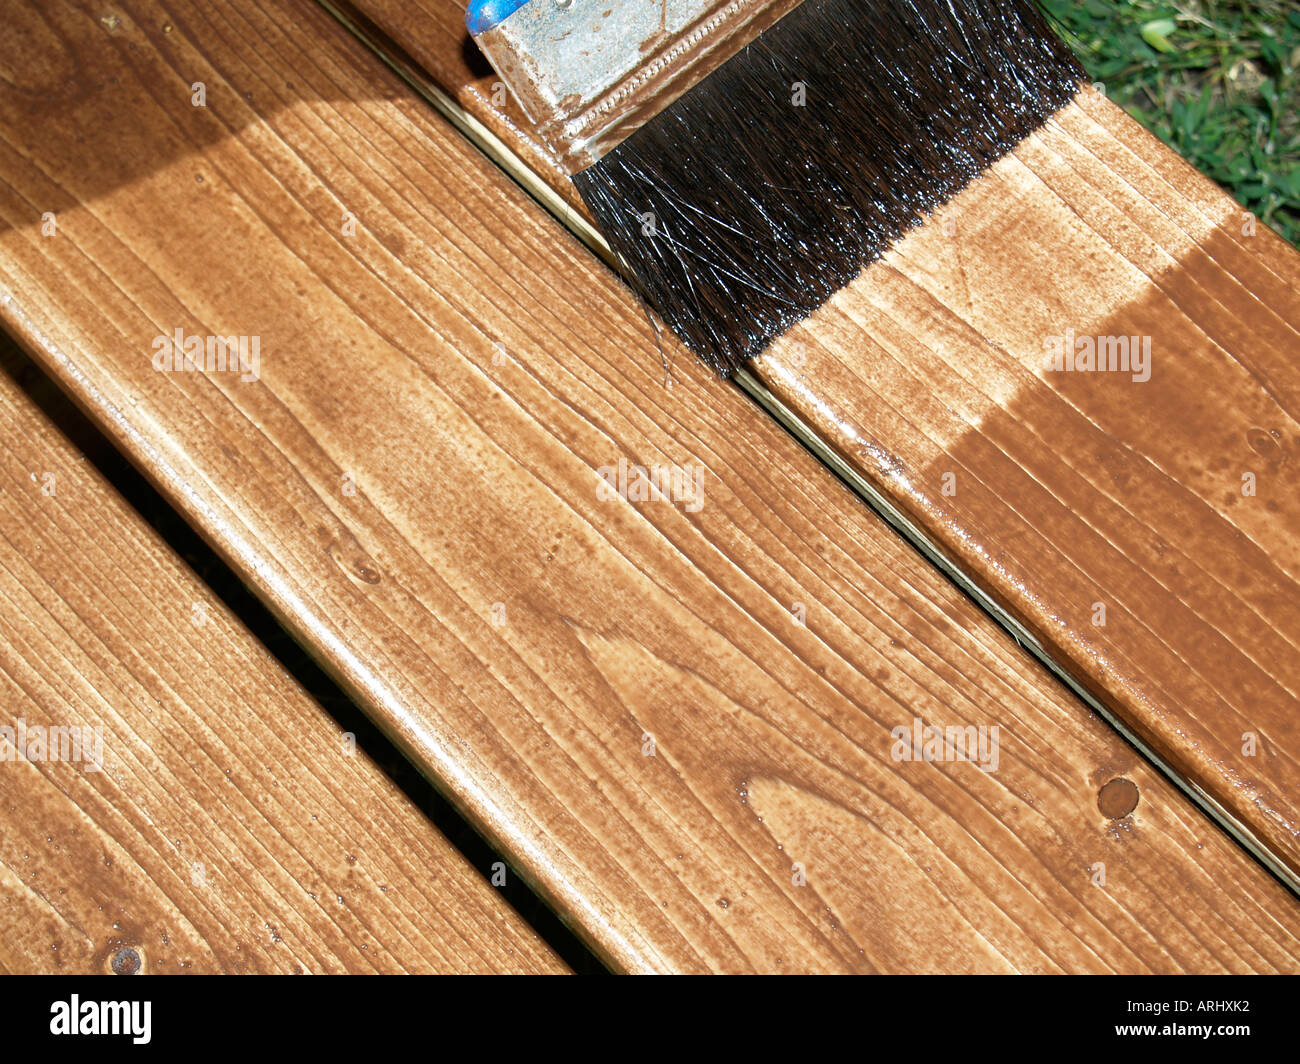 Il trattamento del legno con rivestimento protettivo di una spazzola di vernice della pittura con doghe in legno Foto Stock